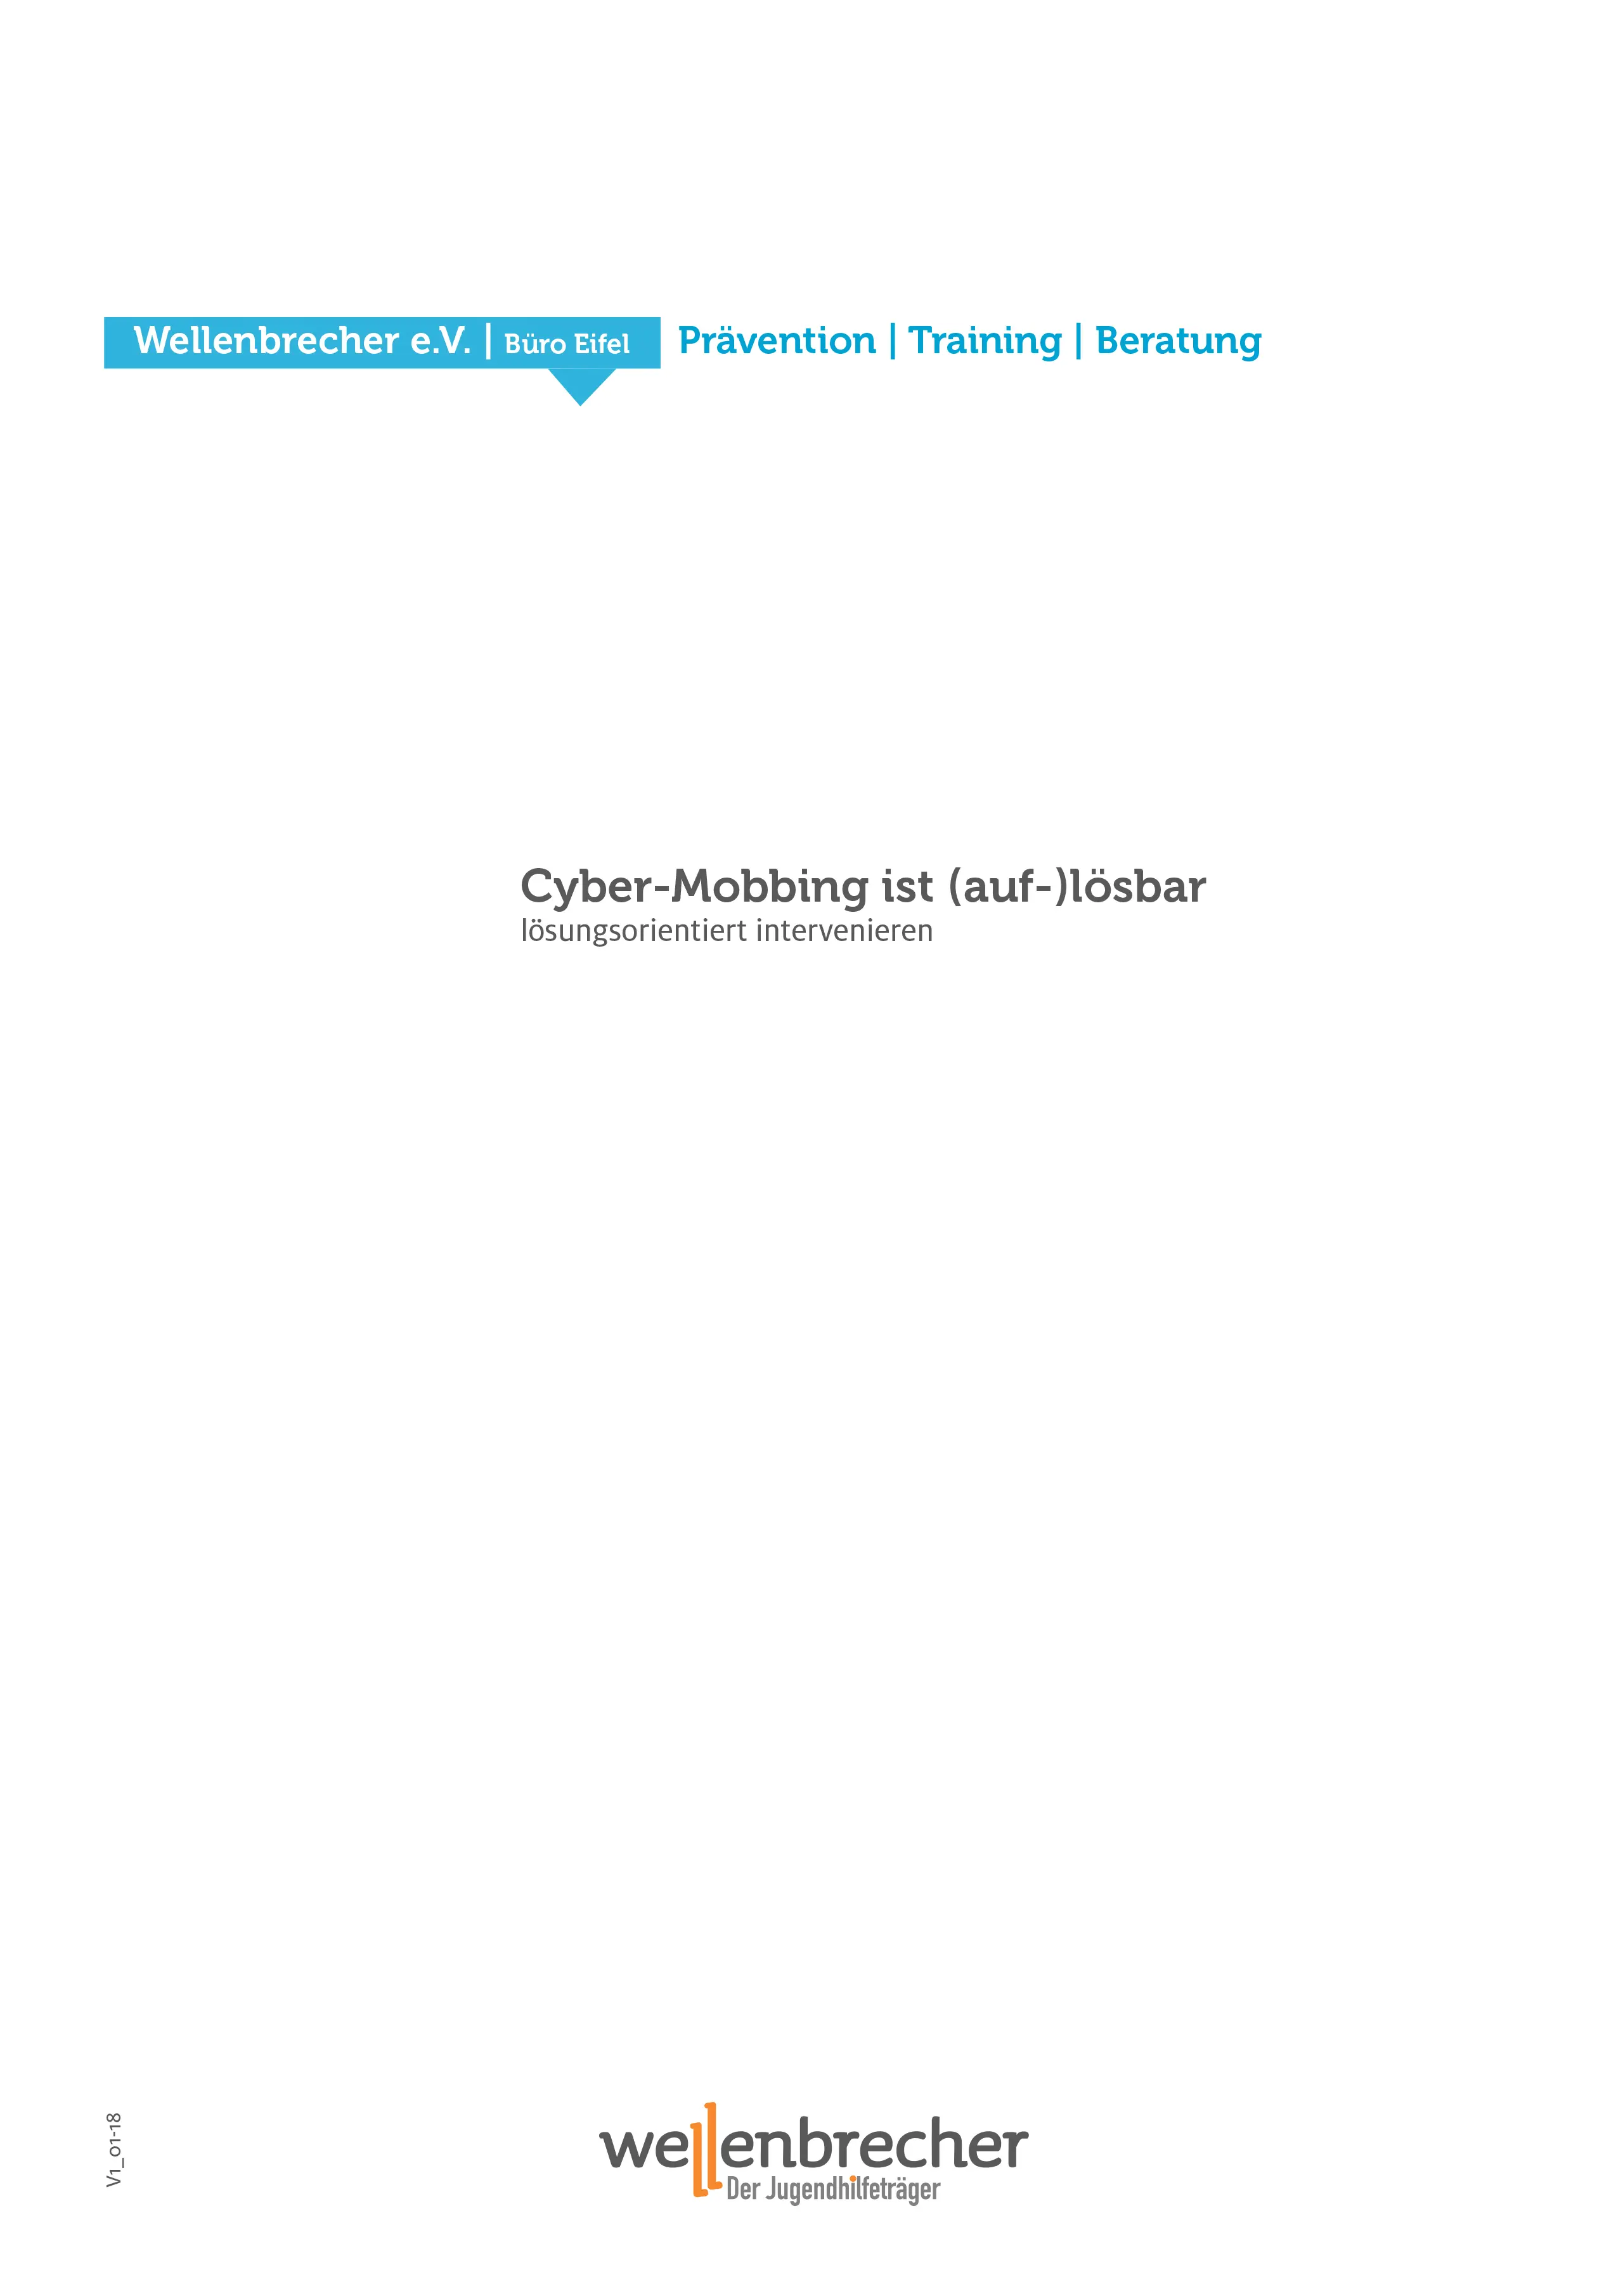  Titelseite Fortbildung Cyber-Mobbing